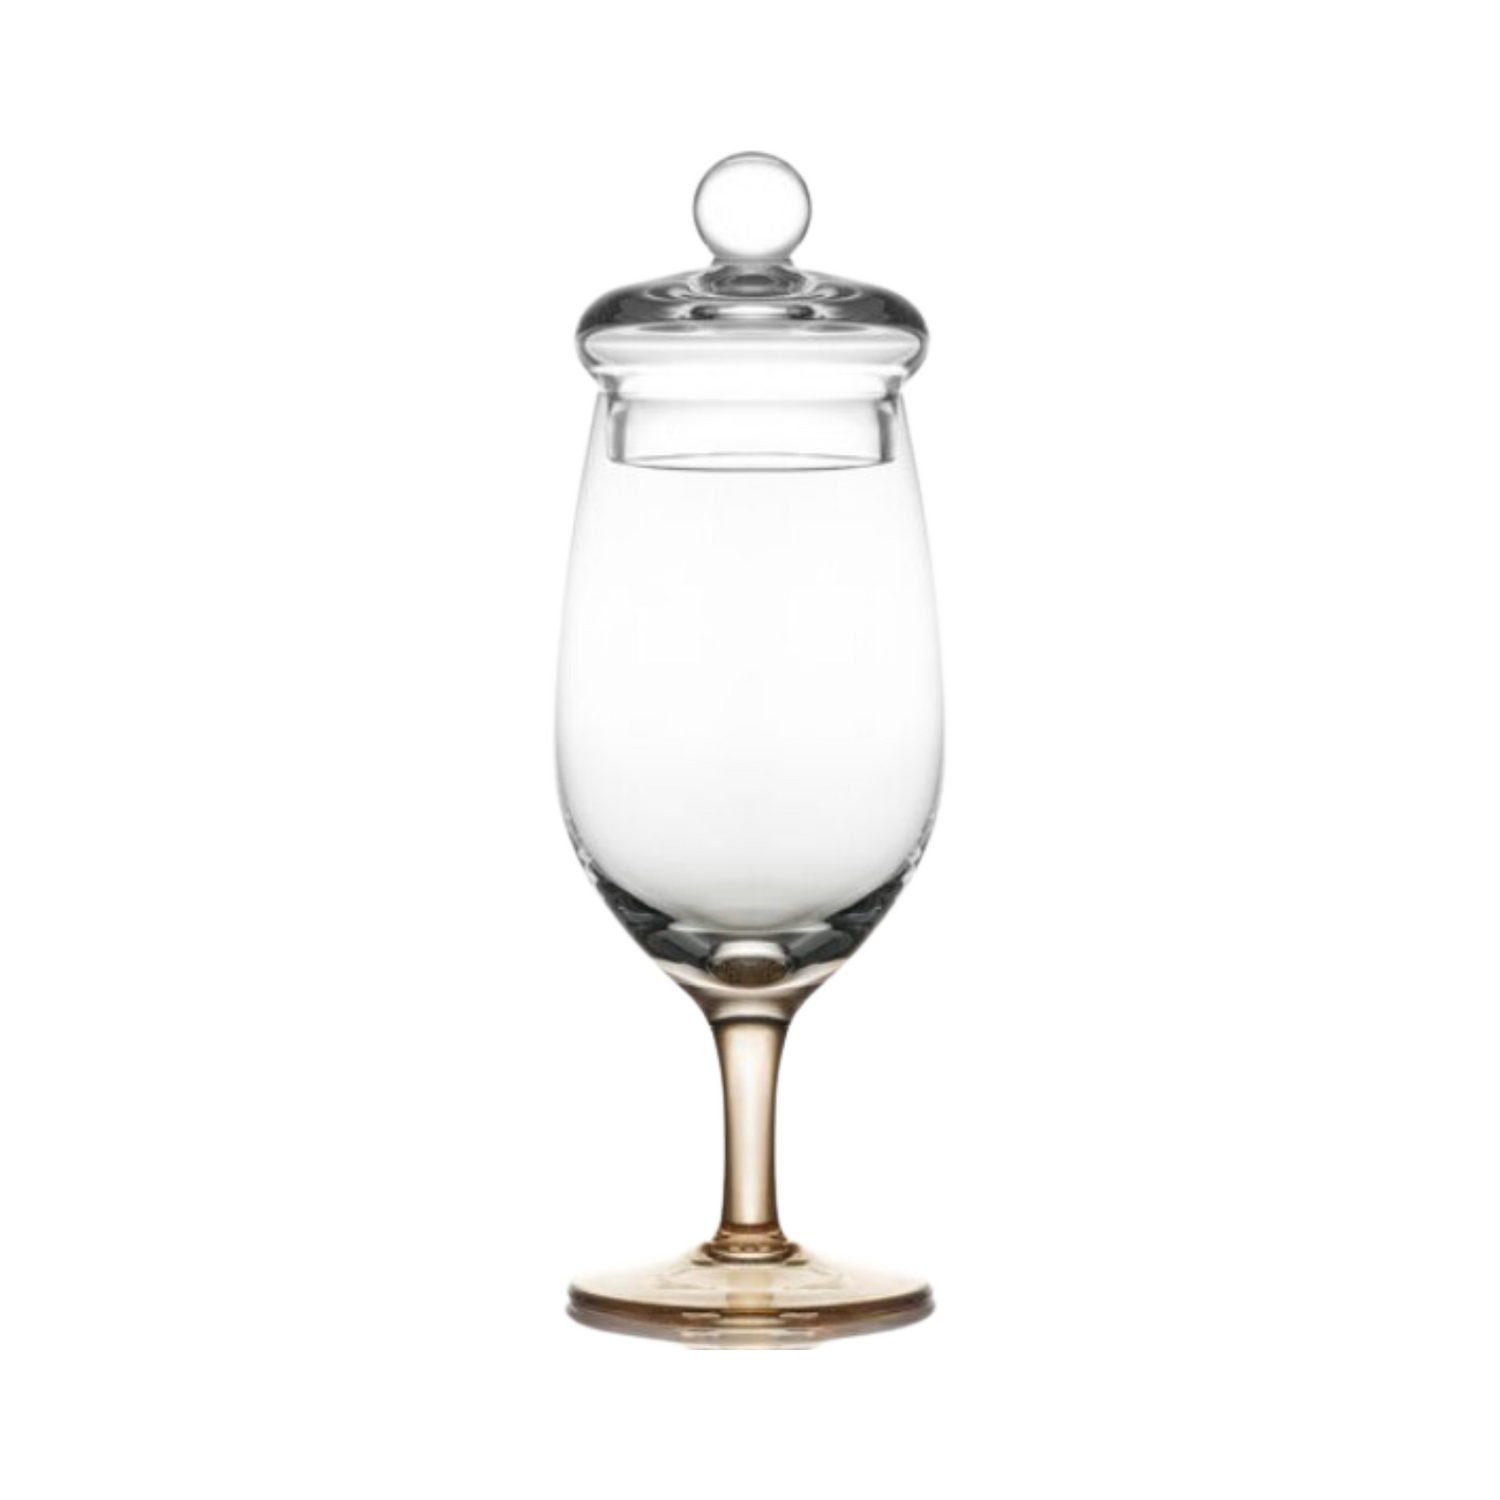 Amber Handmade Whisky Nosing & Tasting Glass G201